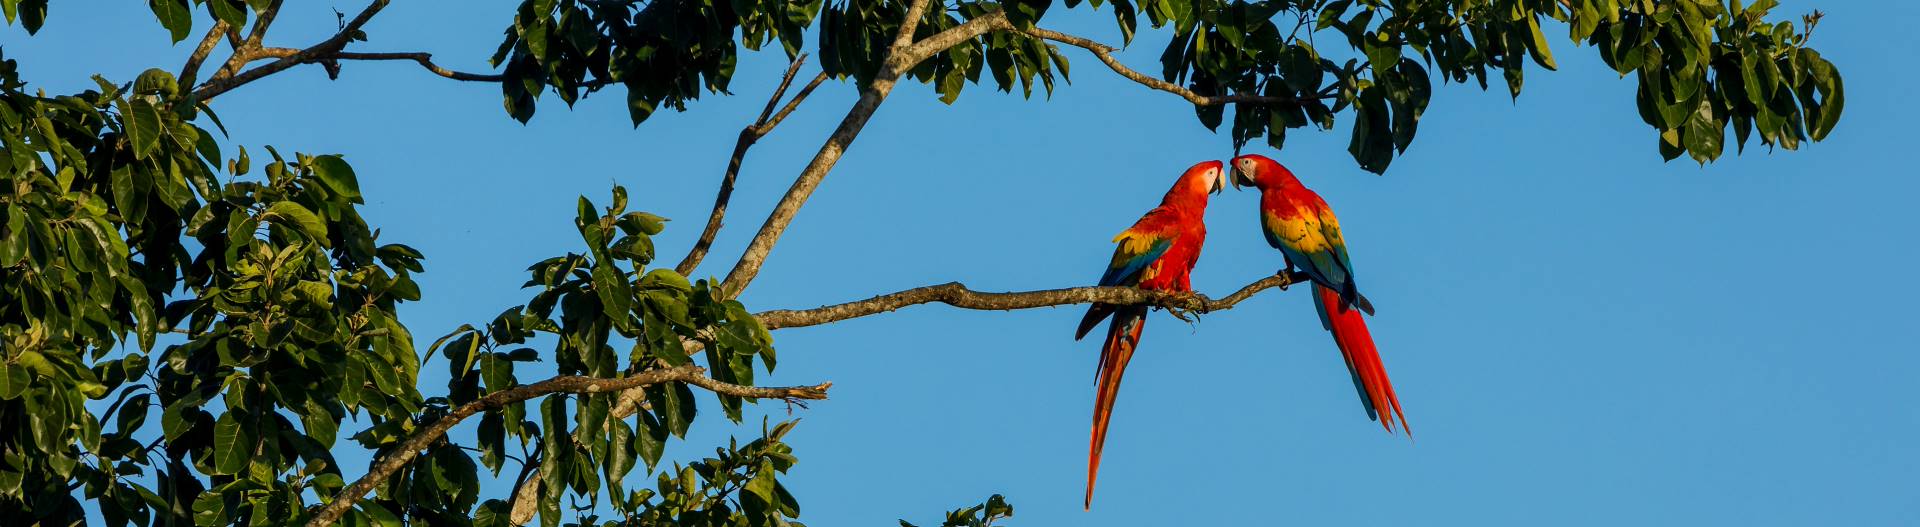 Parchi Naturali in Costa Rica